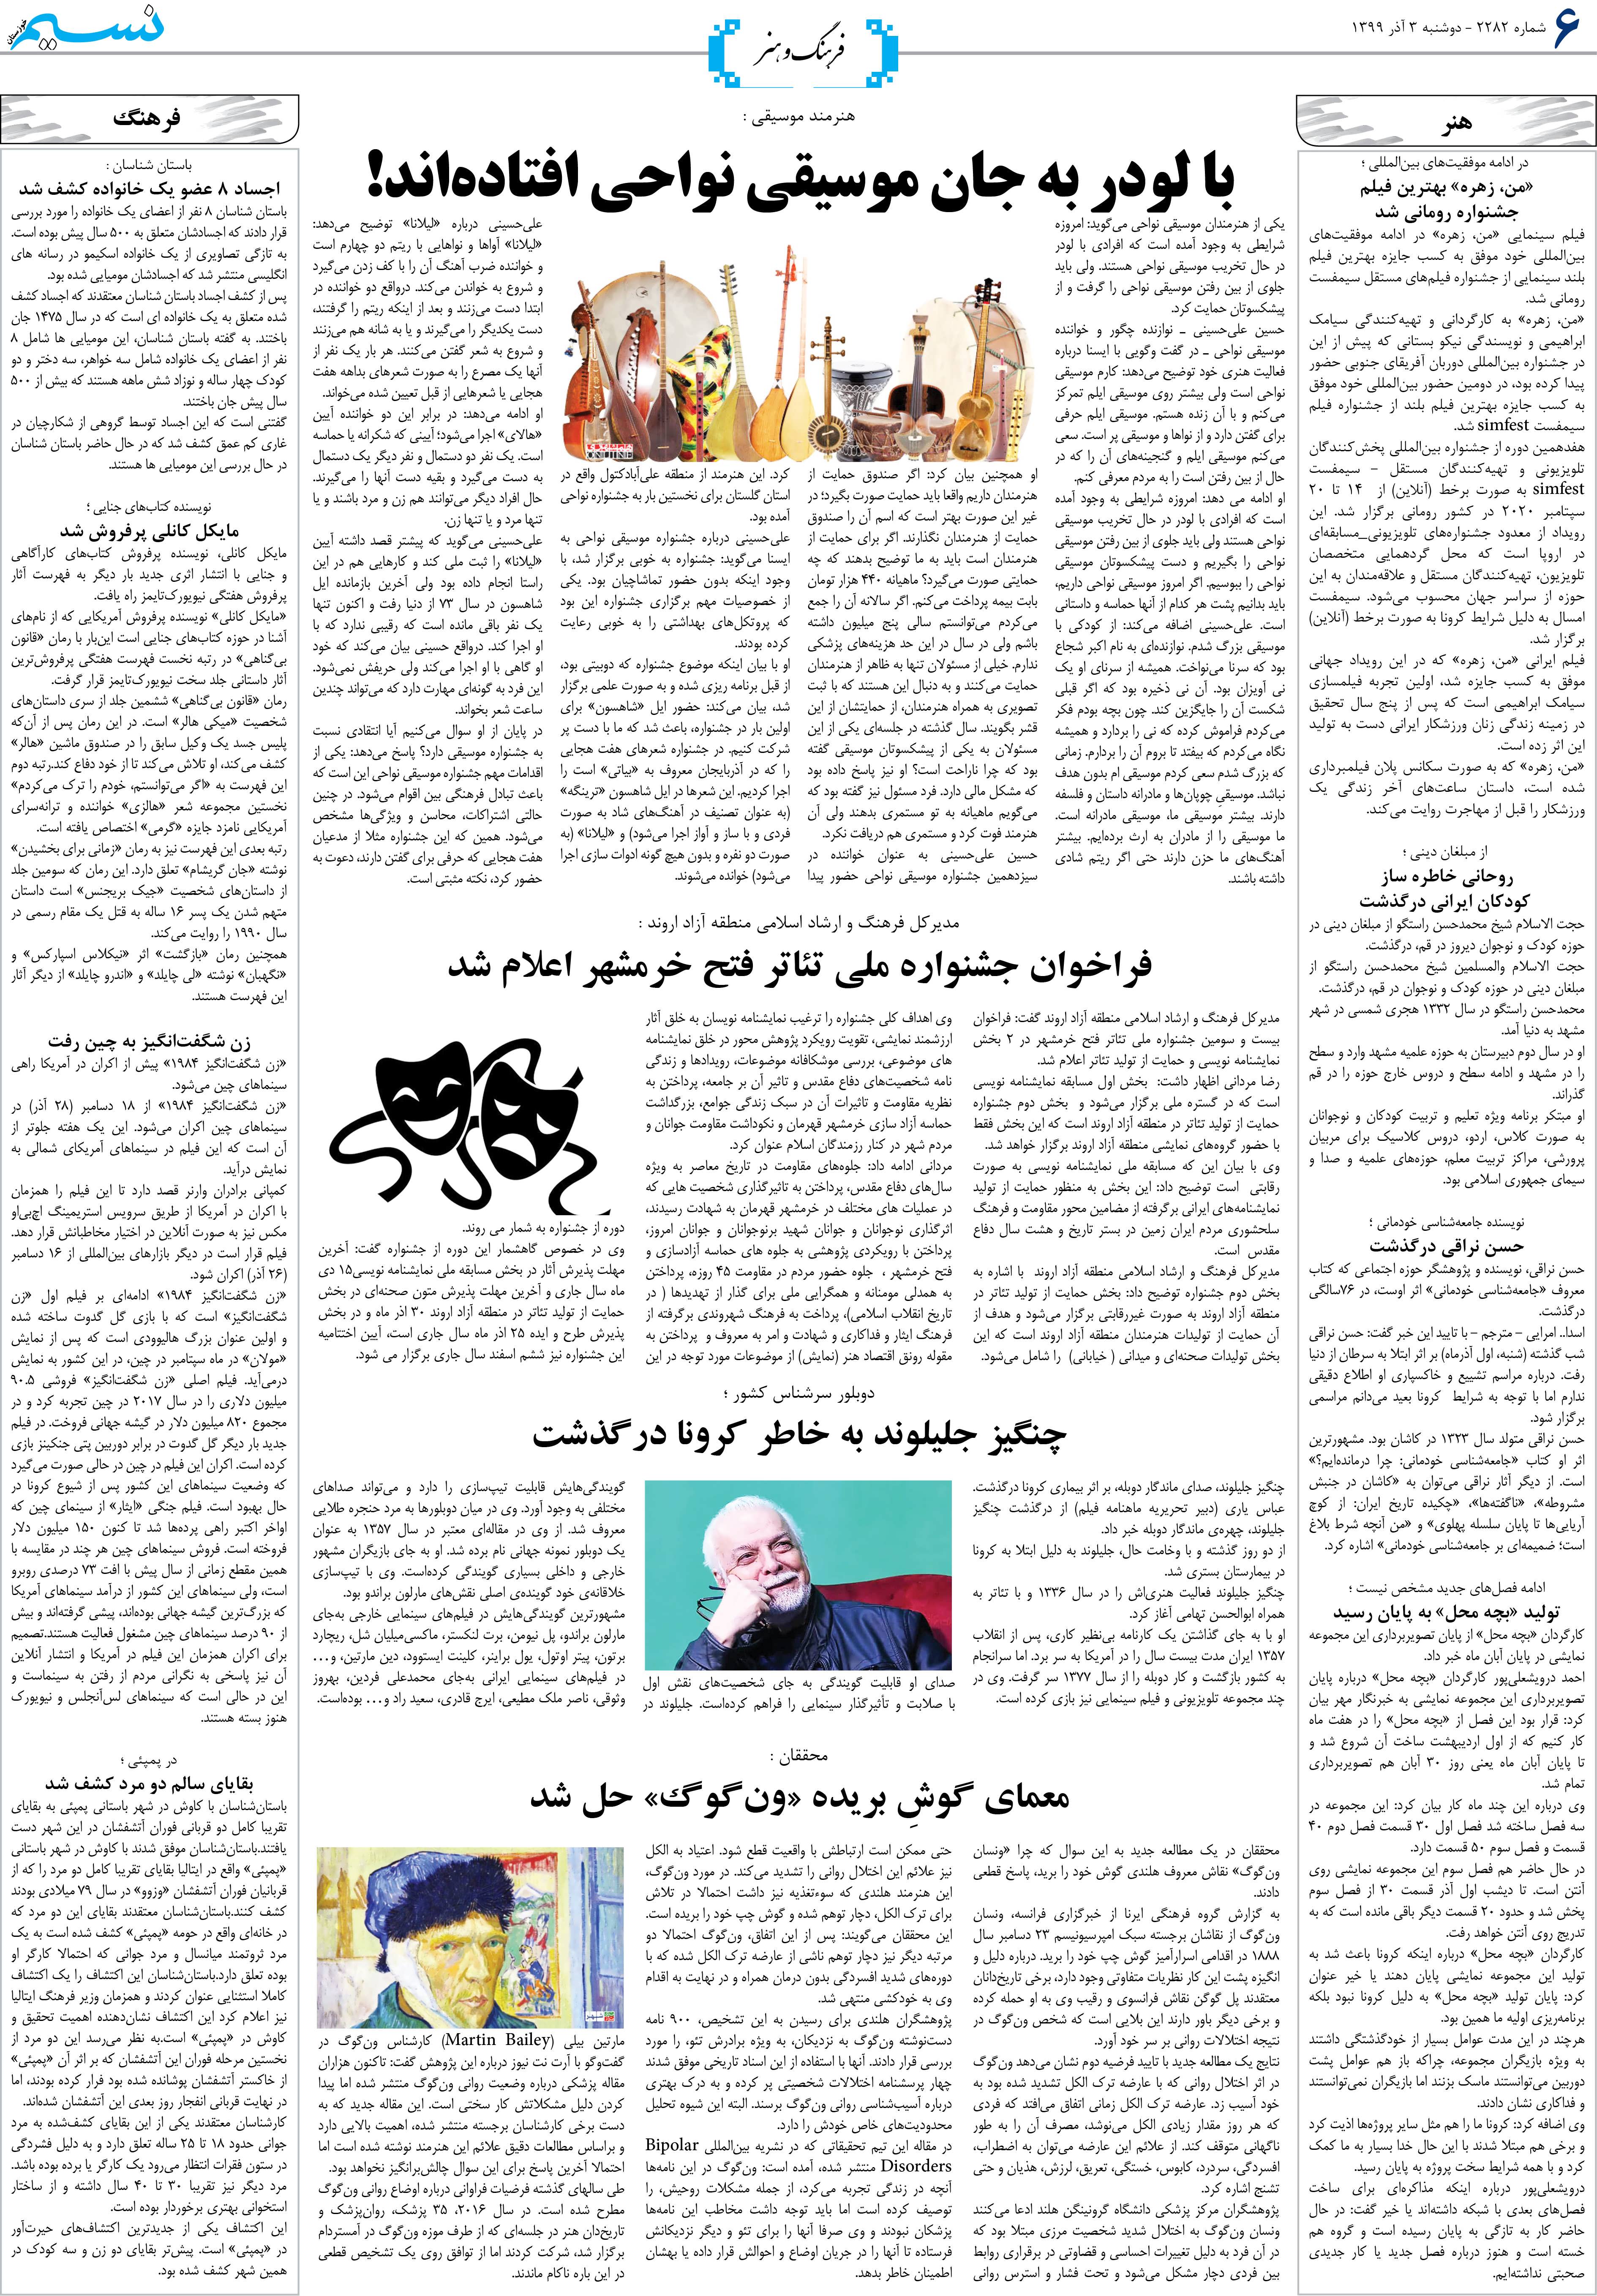 صفحه فرهنگ و هنر روزنامه نسیم شماره 2282